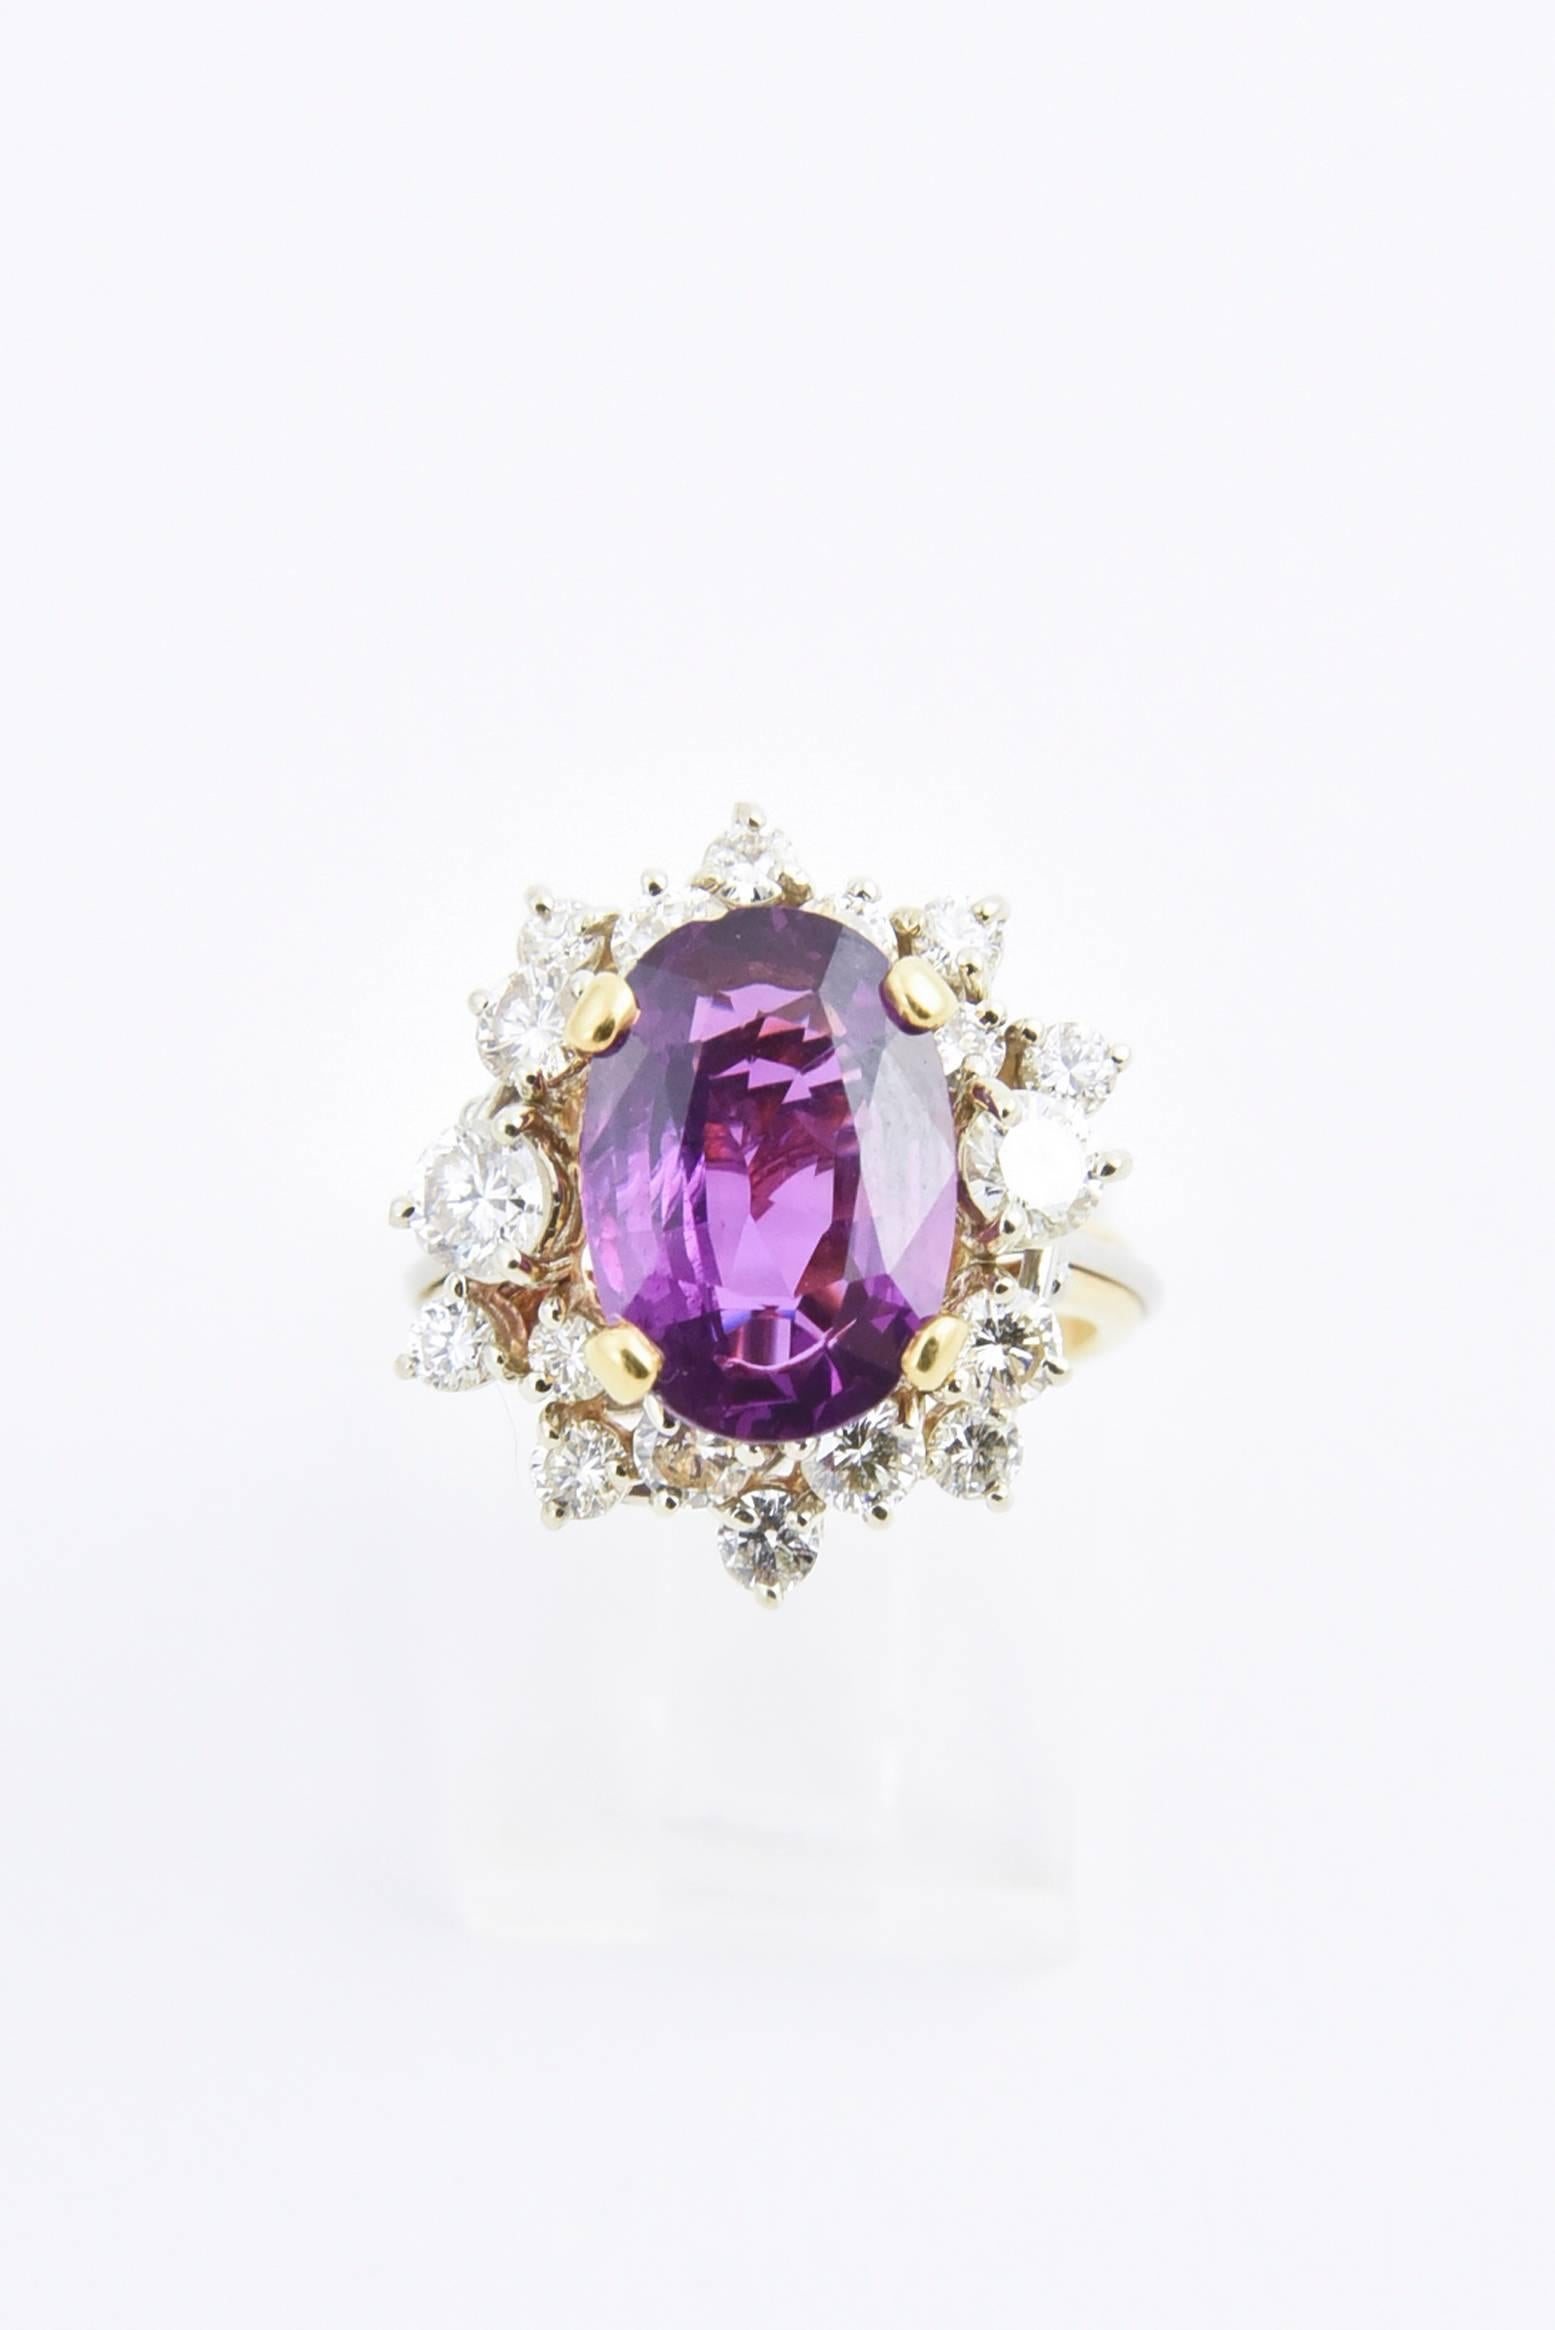 Glamouröser Saphir- und Diamantring mit einem ovalen rosa-violetten Saphir von ca. 4 Karat inmitten von 18 Diamanten von ca. 1,5 Karat. Montiert in einem Ring aus 18 Karat Weiß- und Gelbgold mit einem Schneckenmuster auf dem Korb. Begleitet vom